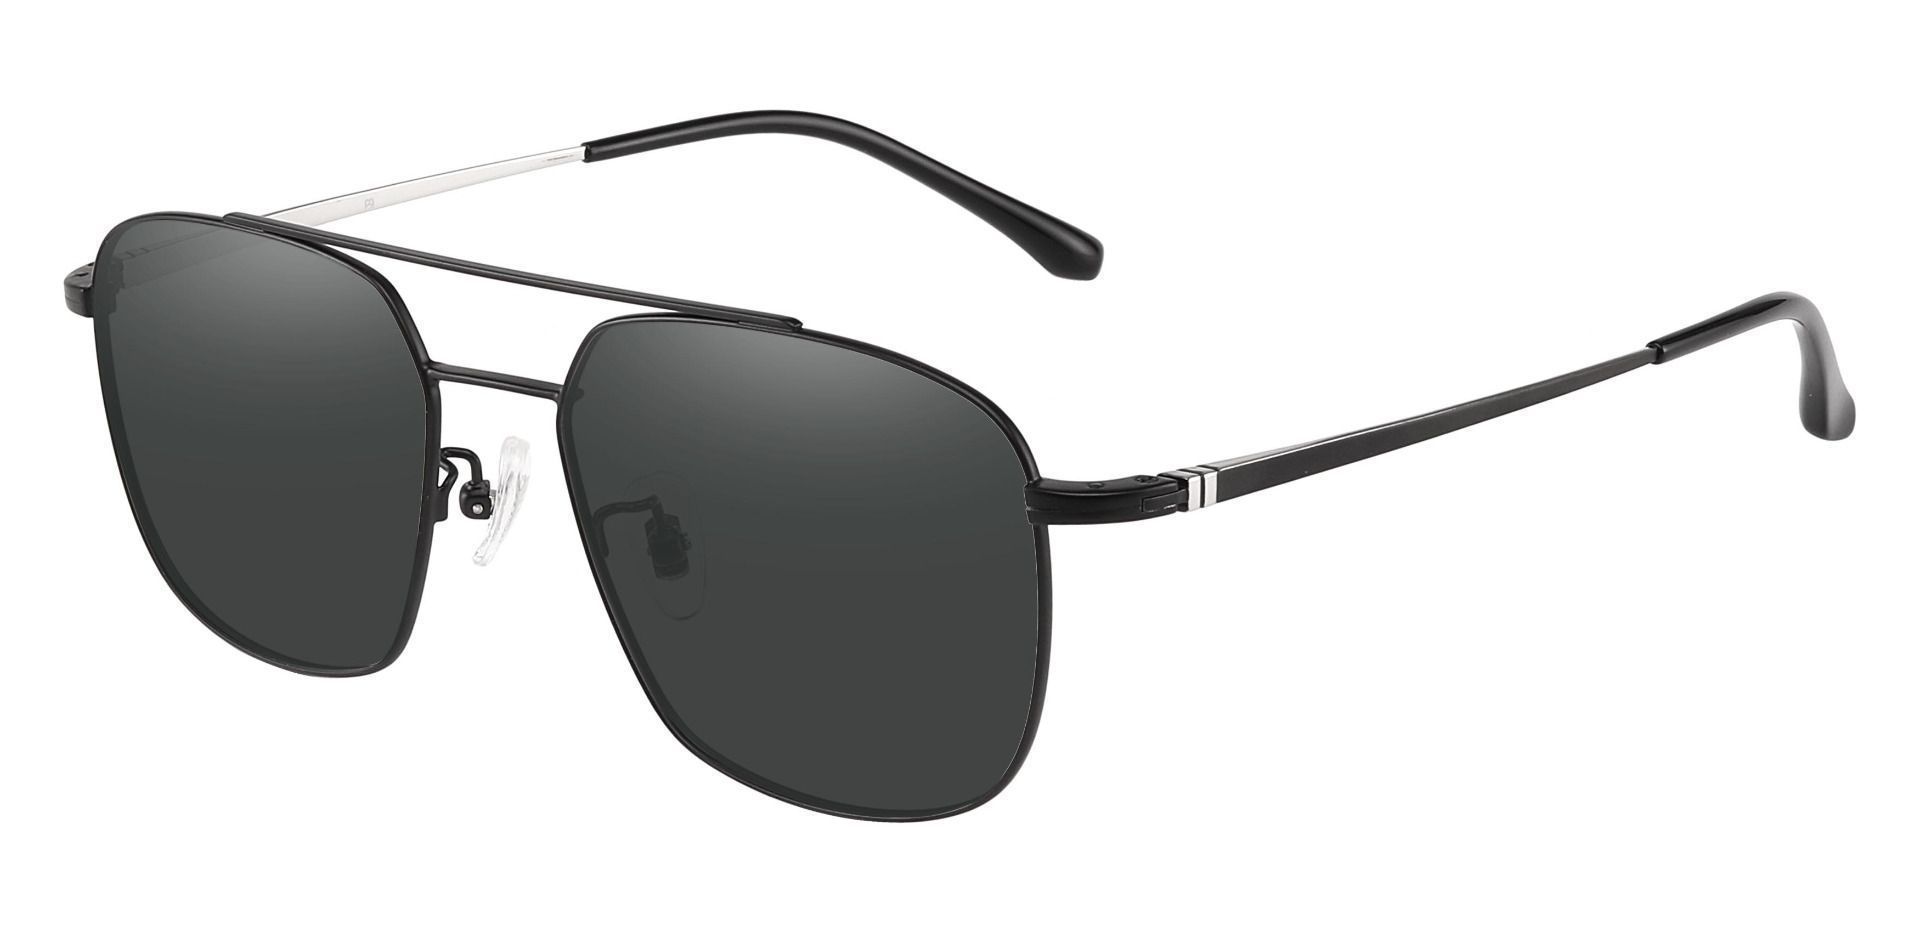 Trevor Aviator Lined Bifocal Sunglasses - Black Frame With Gray Lenses